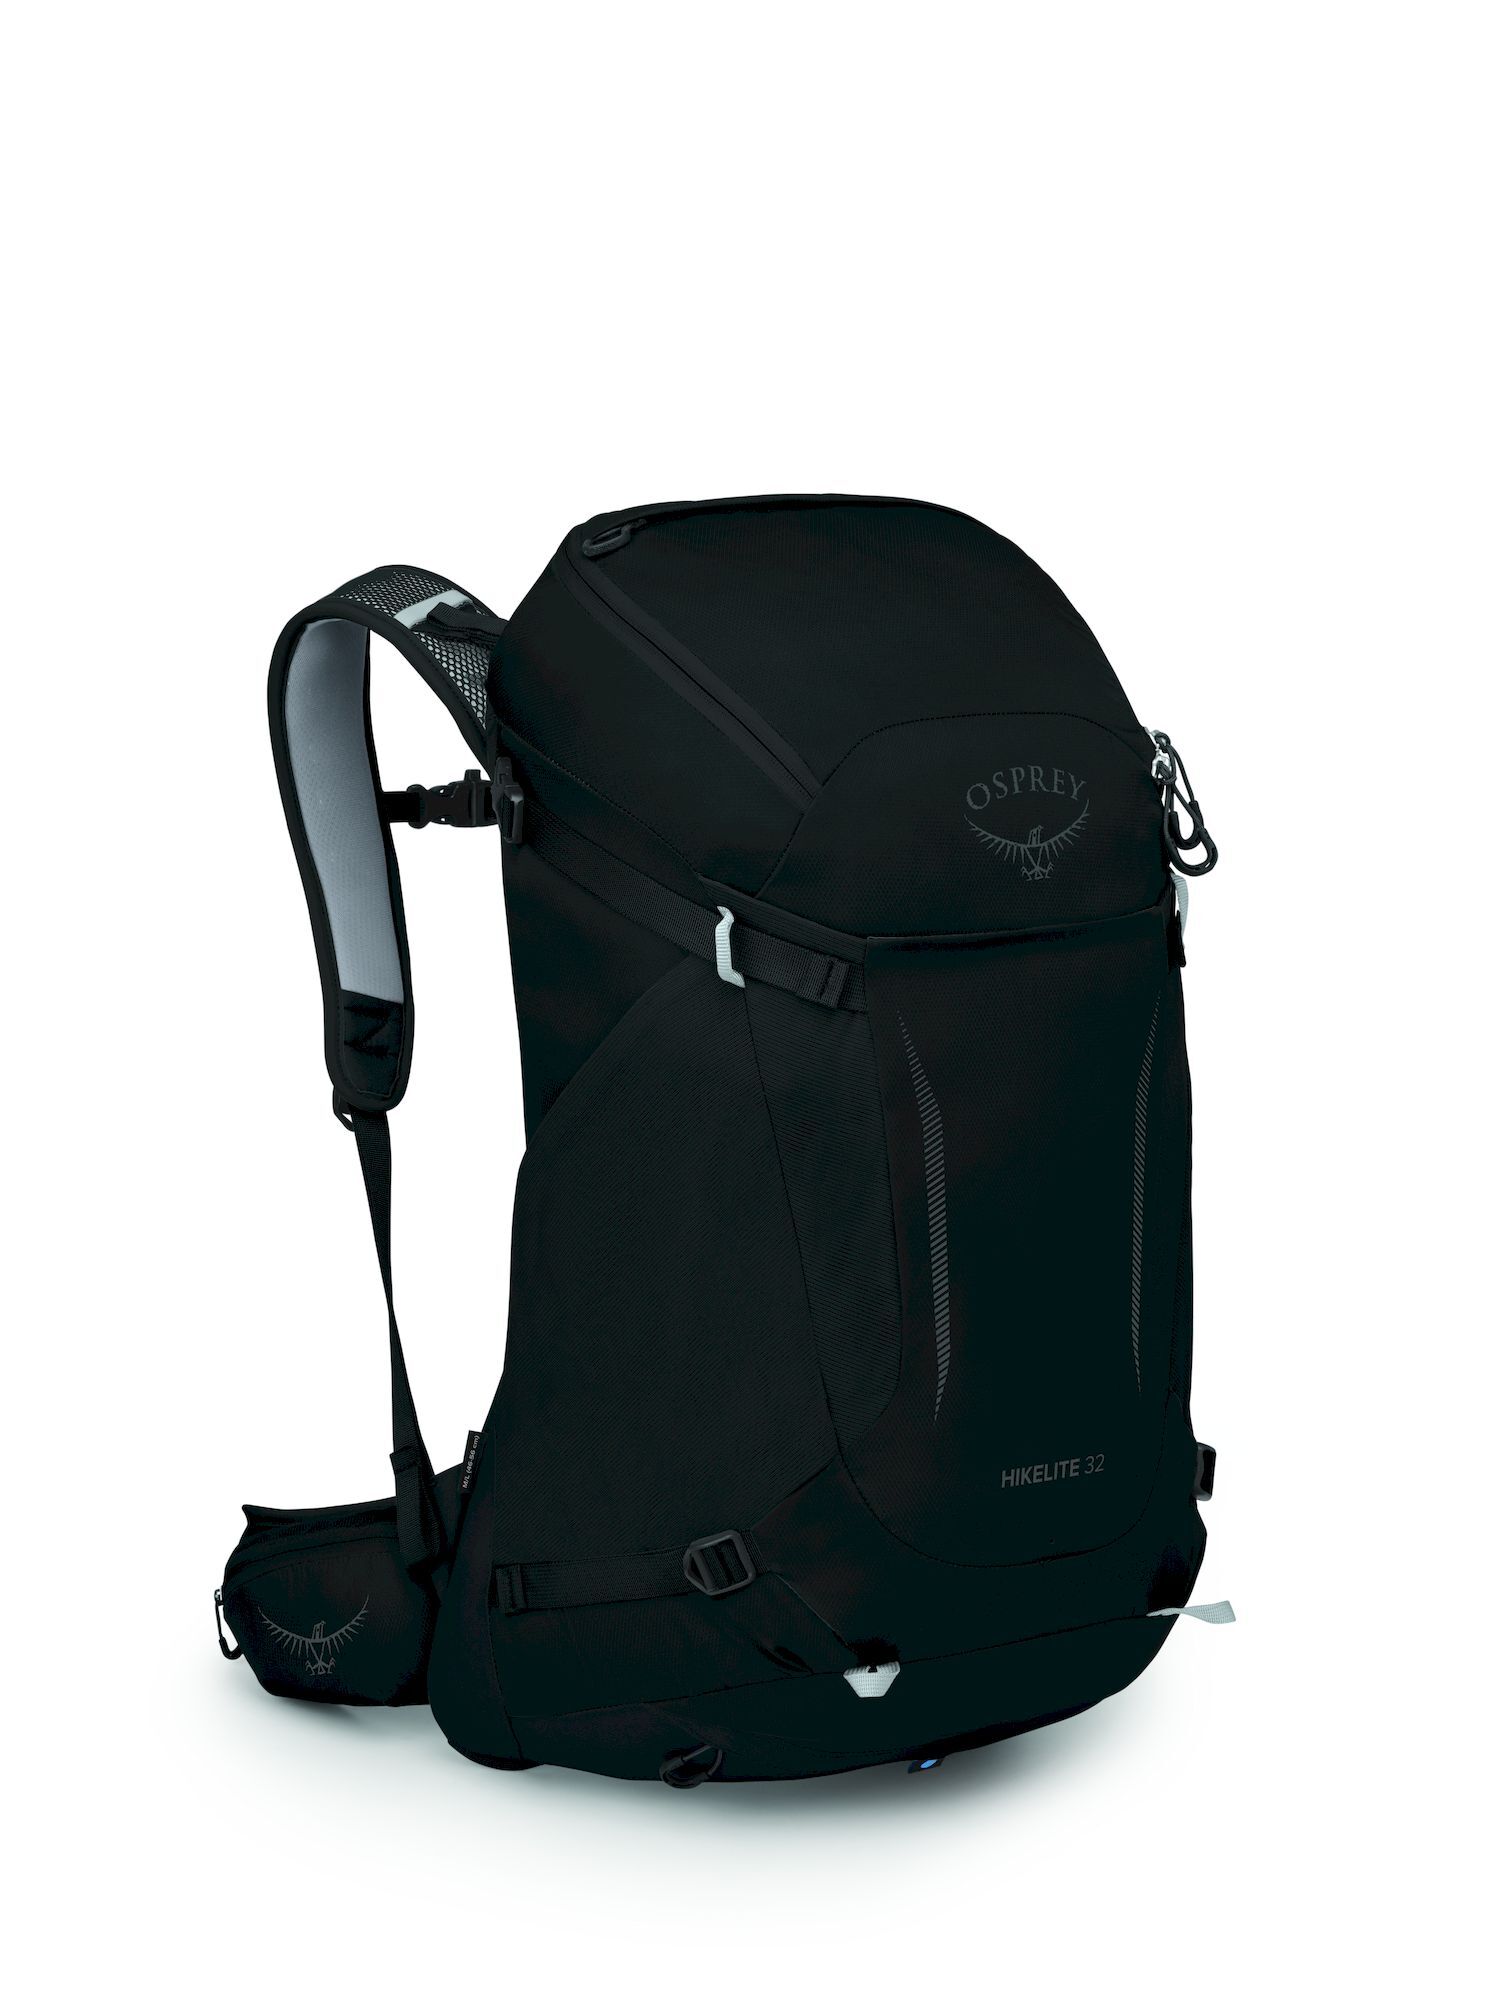 Osprey Hikelite 32 - Hiking backpack